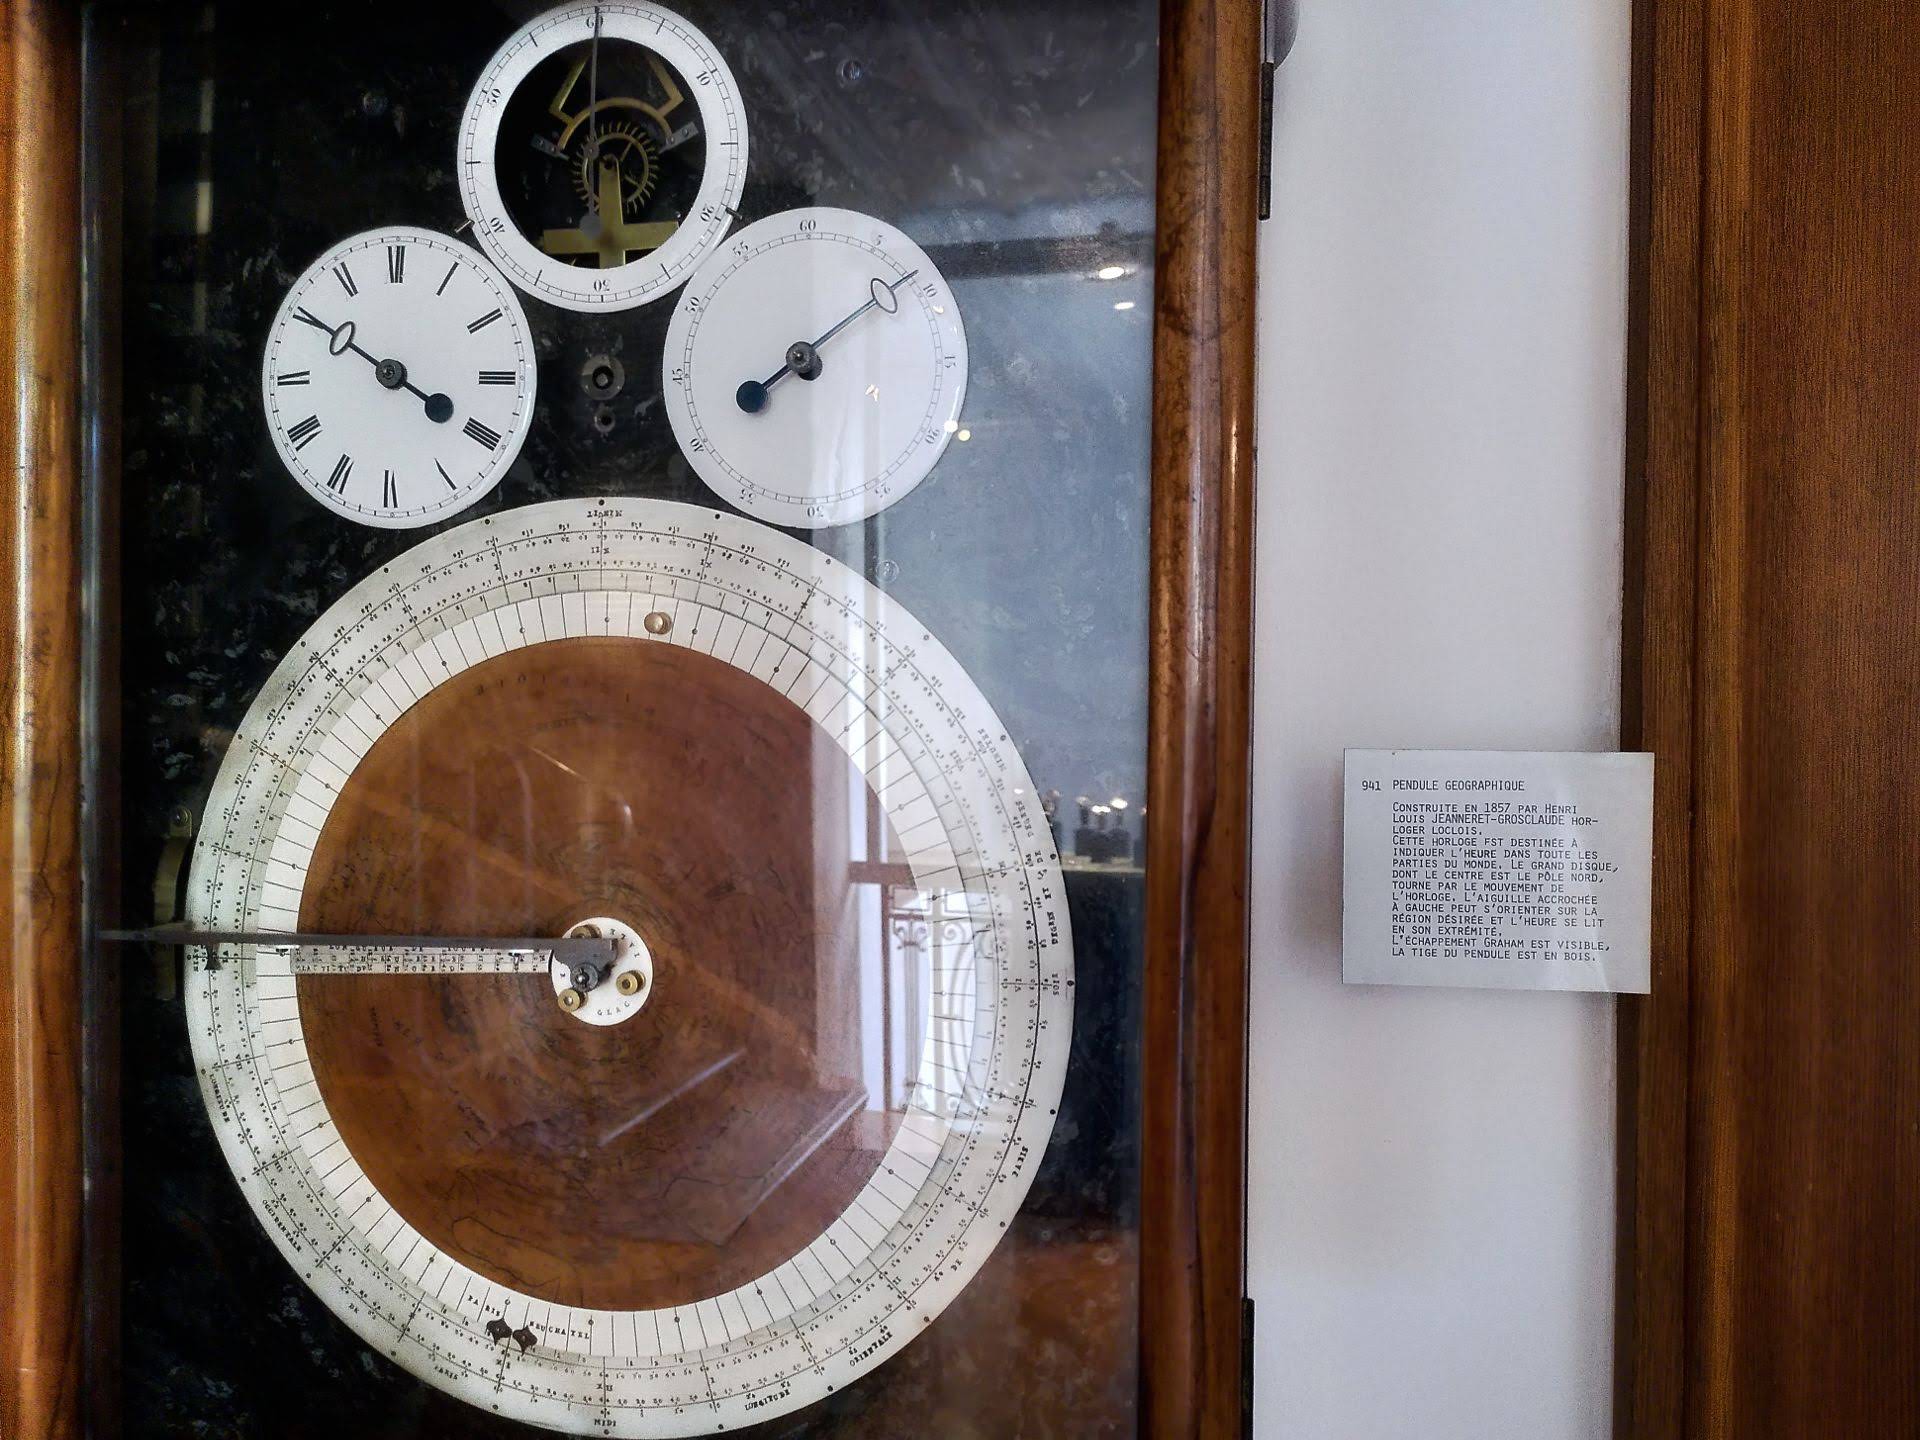 A complex time-keeping device. The text on the side reads "Pendule Geographique. Construite en 1857 par Henri Louis Jeanneret-Grosclaude horloger loclois. Cette horloge est destinée à indiquer l'heure dans toute les parties du monde."